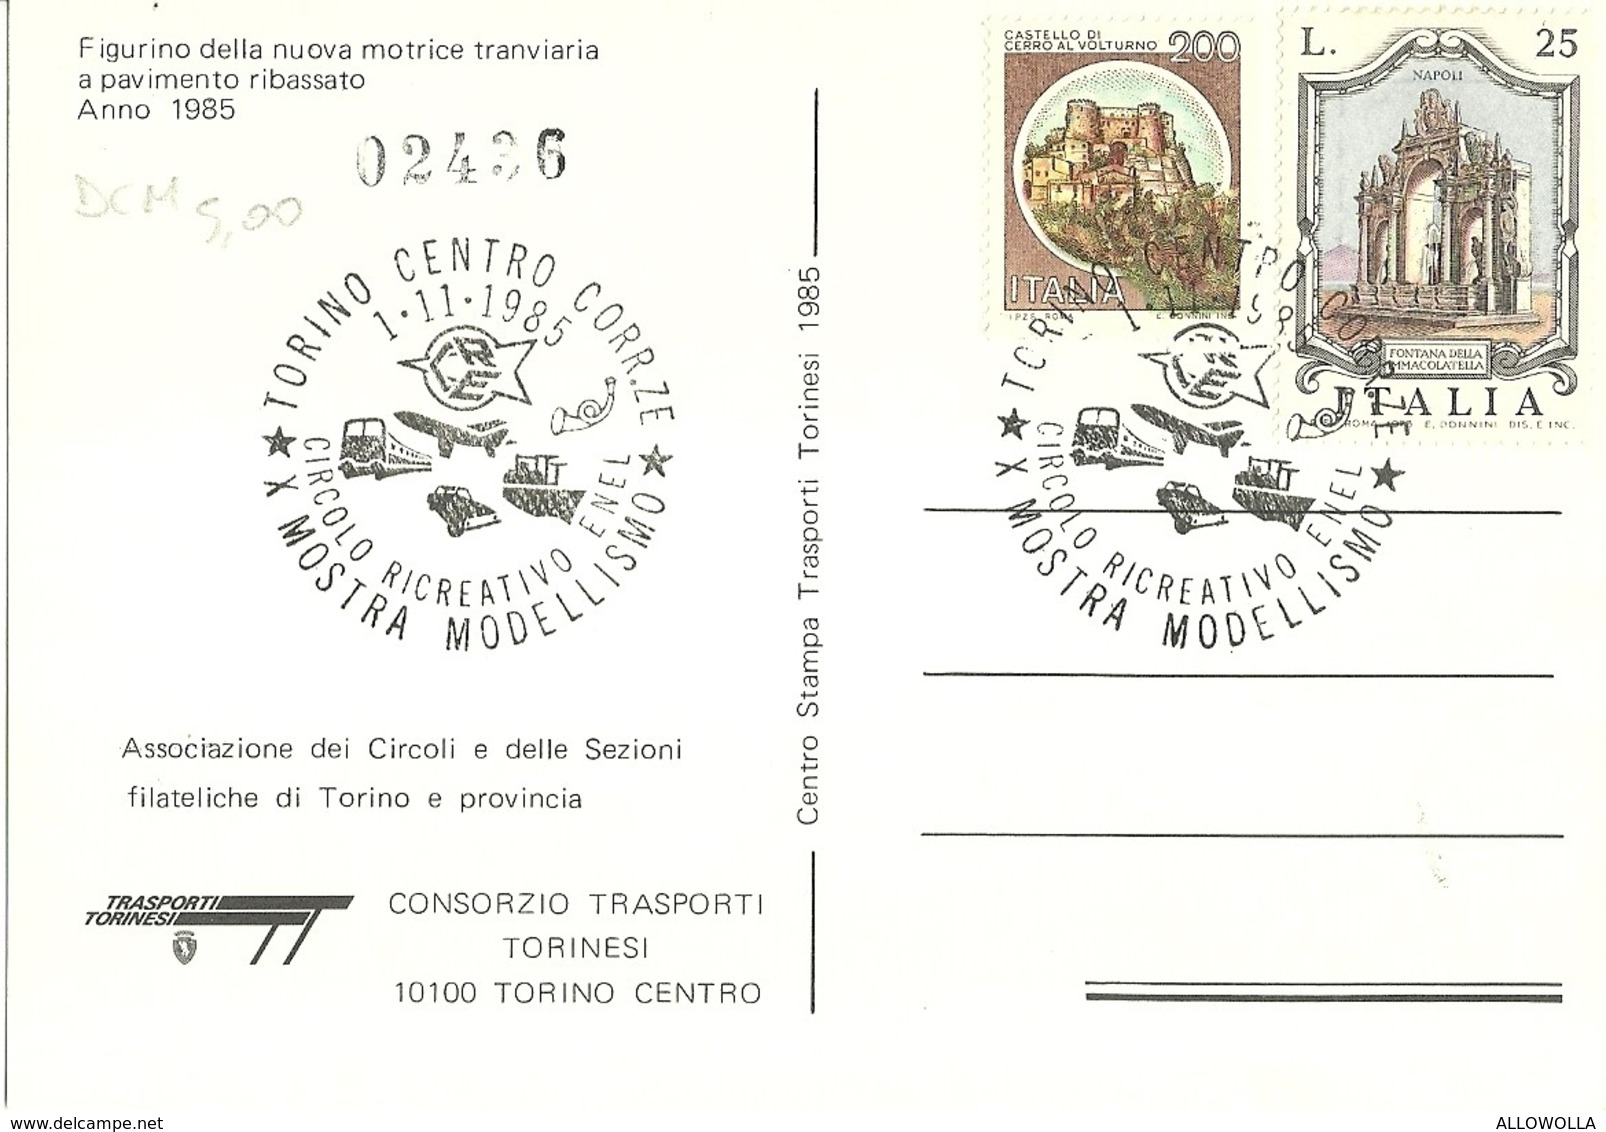 669 "FIGURINO DELLA NUOVA MOTRICE TRANVIARIA A PAVIMENTO RIBASSATO 1985" CART. NON SPED. - Transports